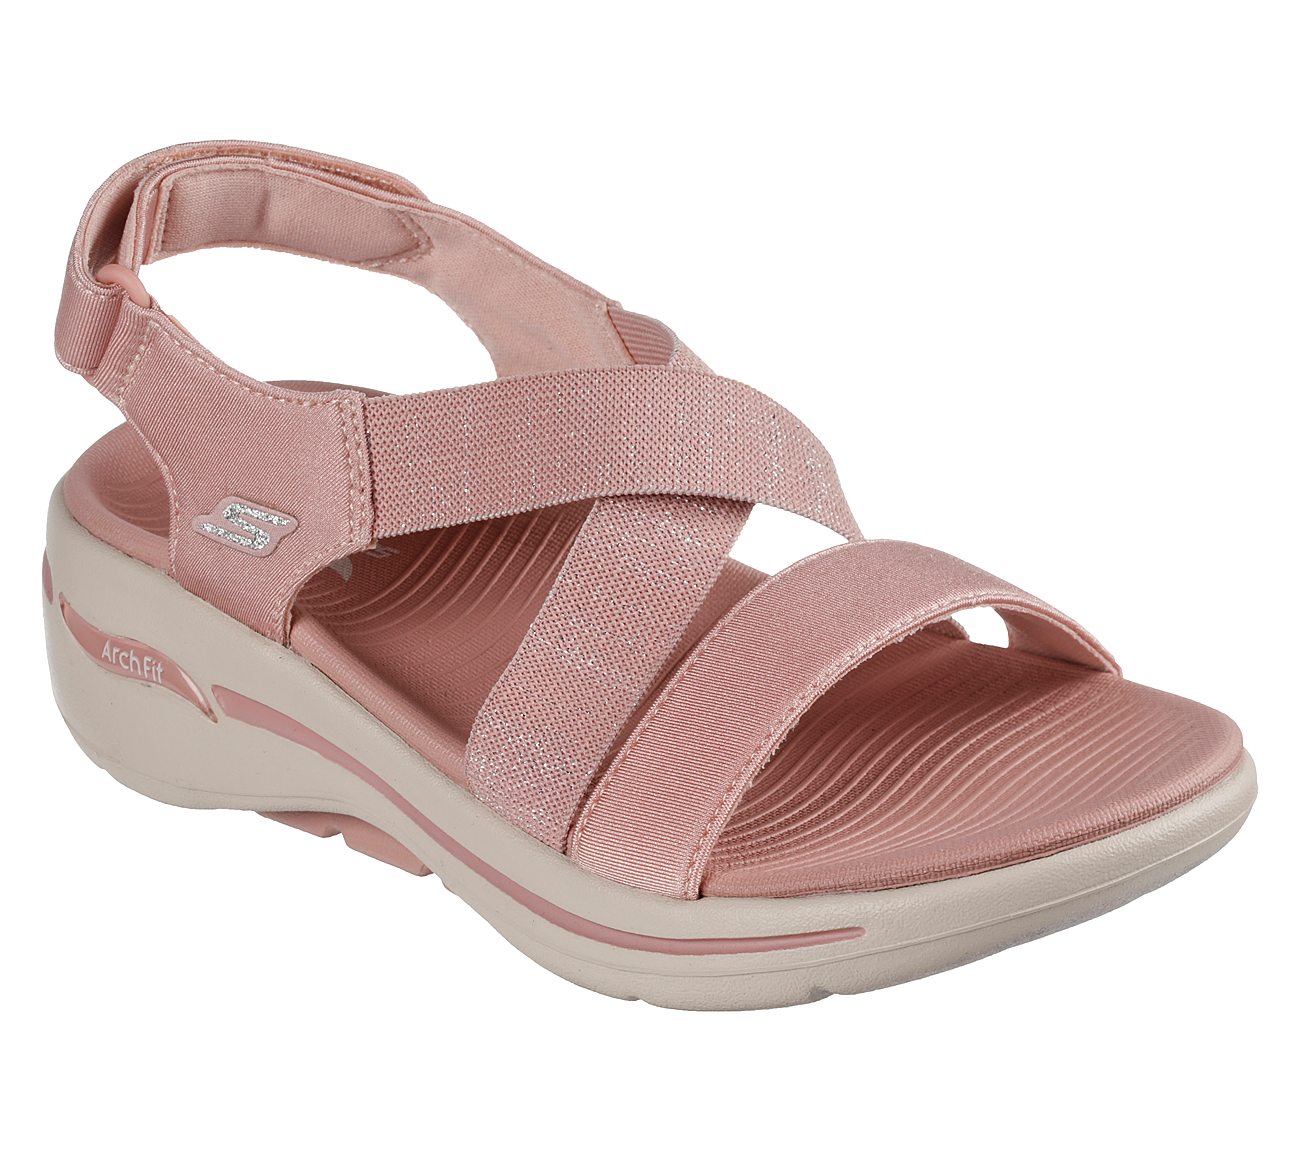 Buy Sandals for men ss607  Sandals Slippers for Men  Relaxo